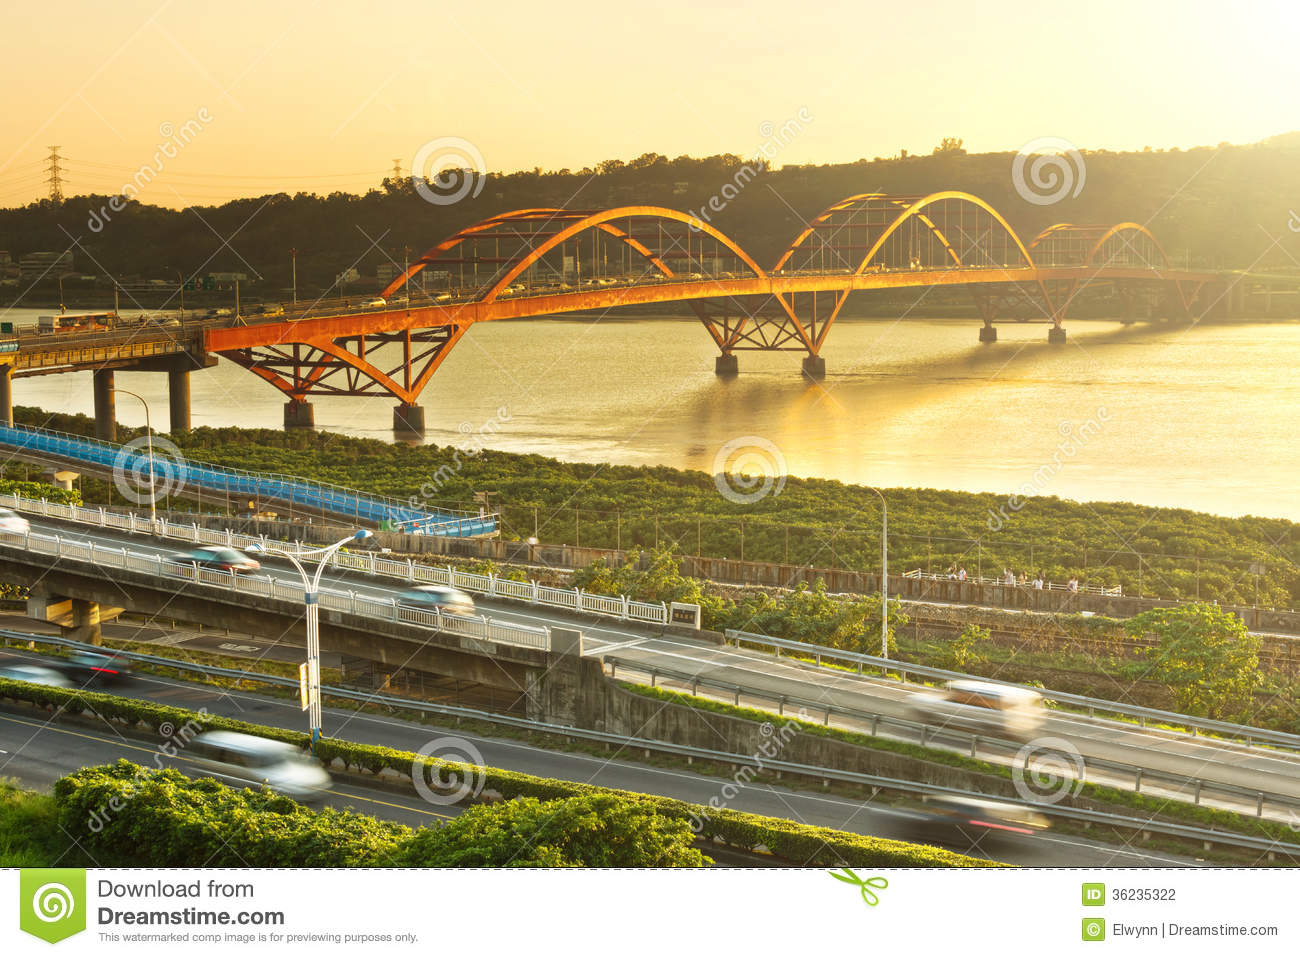 Images of Guandu Bridge | 1300x957